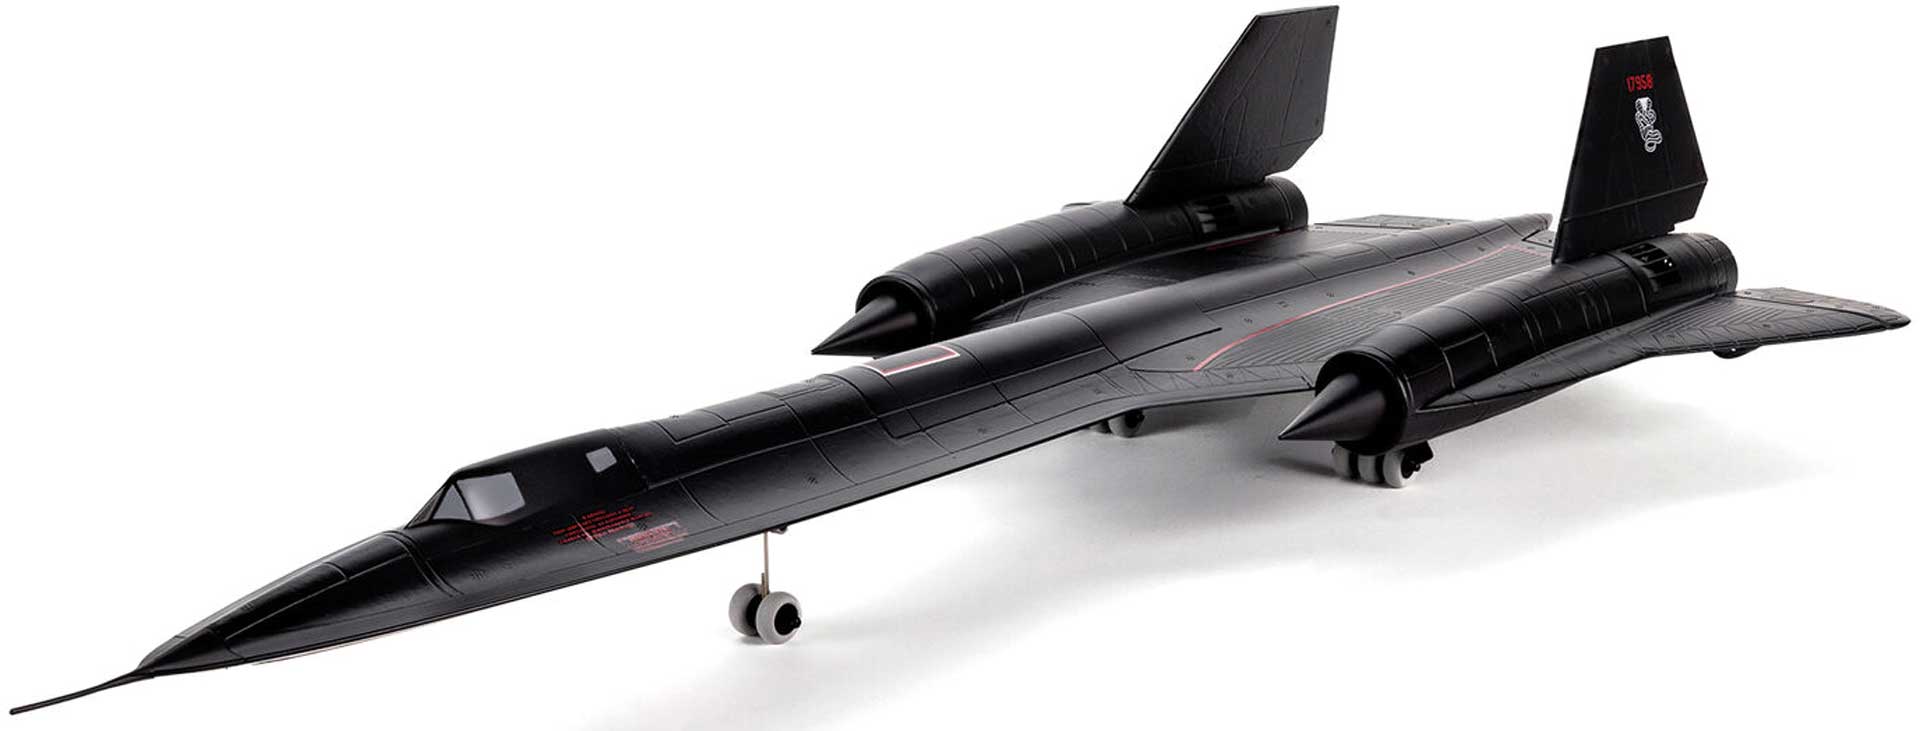 E-FLITE SR-71 Blackbird Twin 40mm EDF BNF Basic mit AS3X und SAFE Select